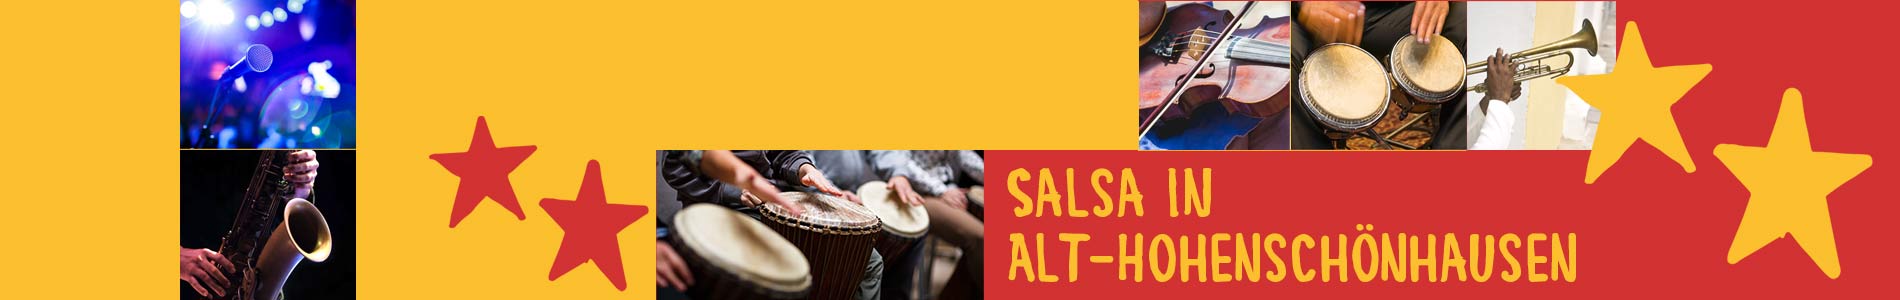 Salsa in Alt-Hohenschönhausen – Salsa lernen und tanzen, Tanzkurse, Partys, Veranstaltungen